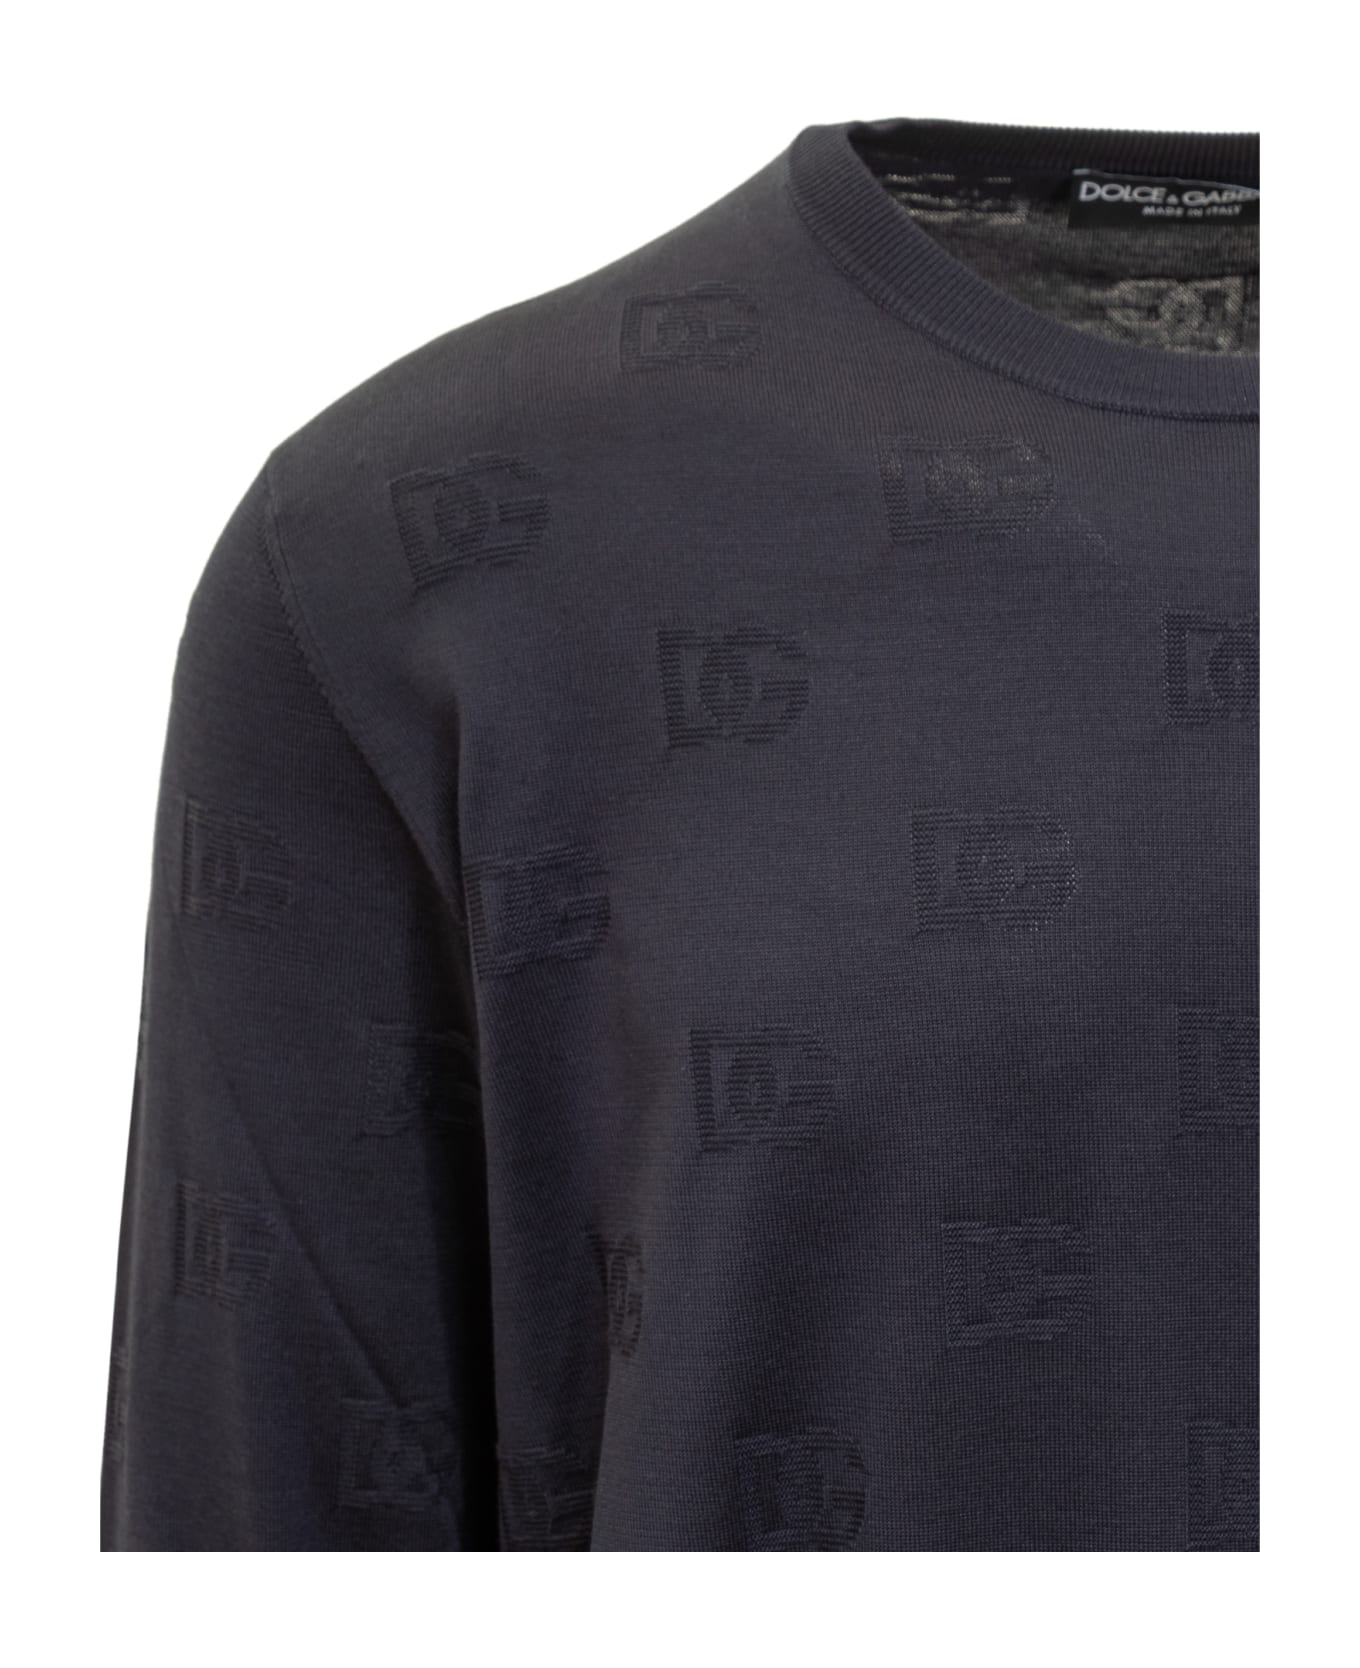 Dolce & Gabbana Sweater - Blue